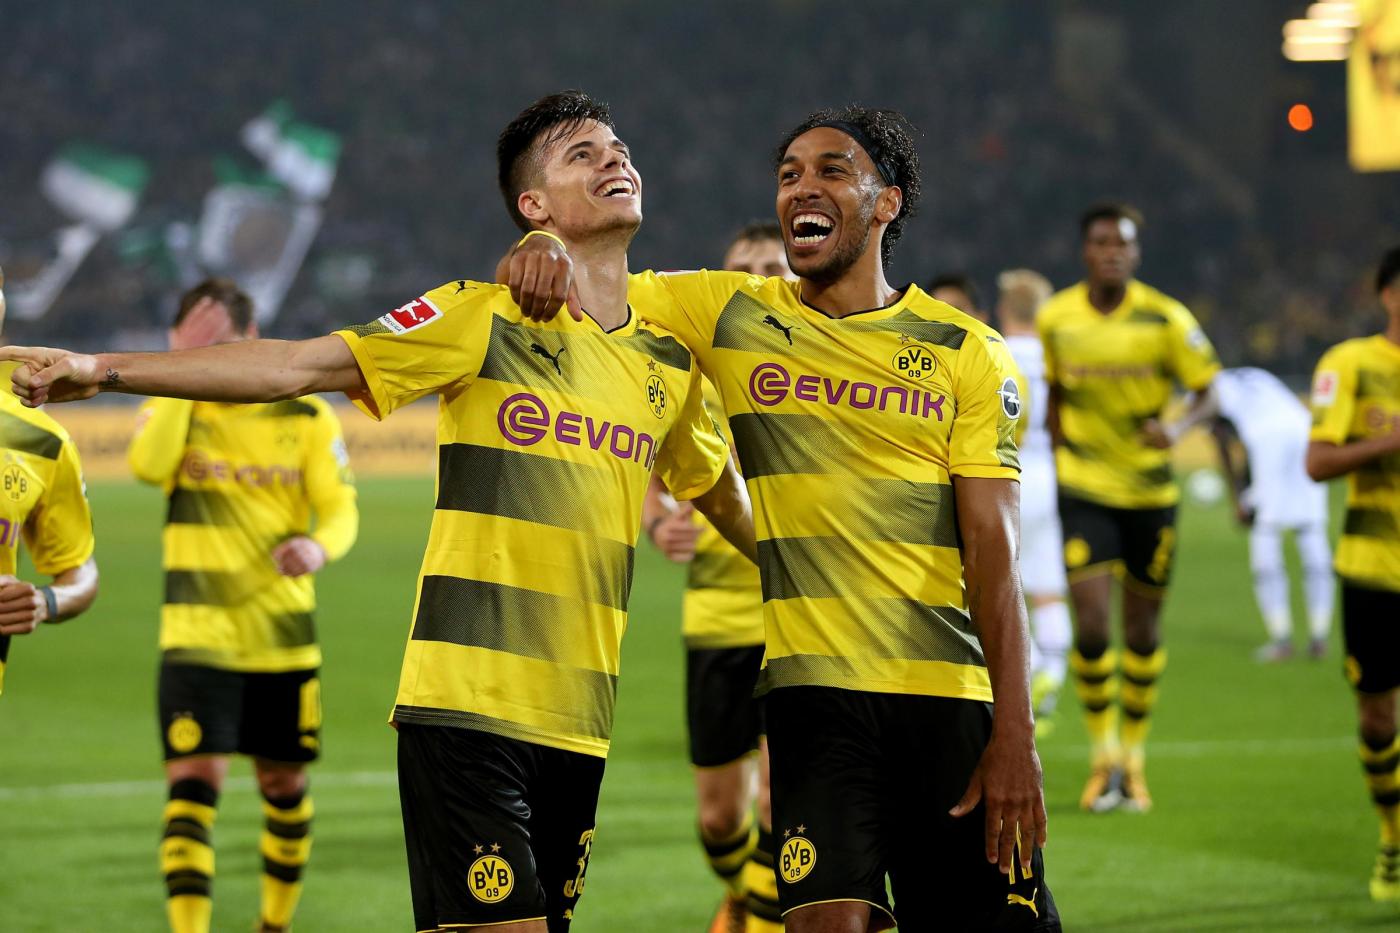 Dortmund-Magonza 5 maggio, analisi e pronostico Bundesliga